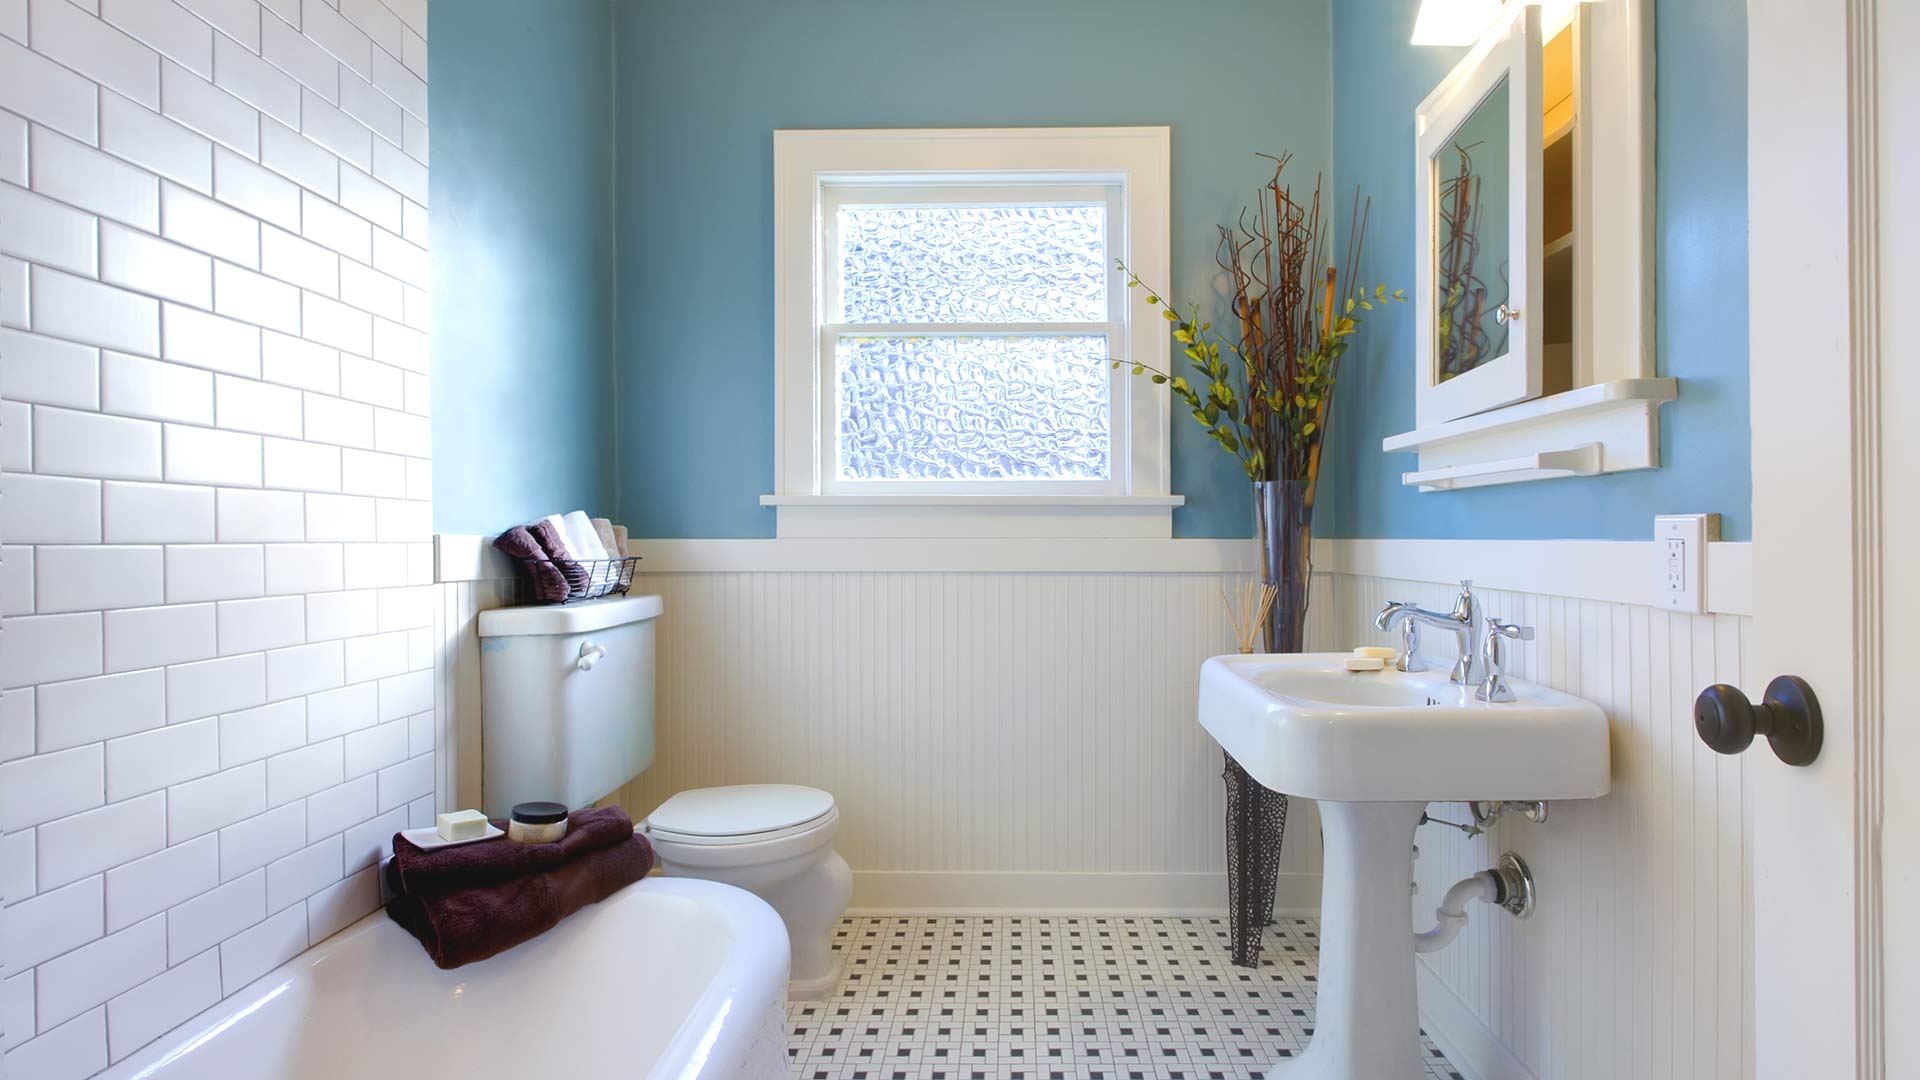 Baño ecológico con pisos de baldosas de cerámica y paredes azules